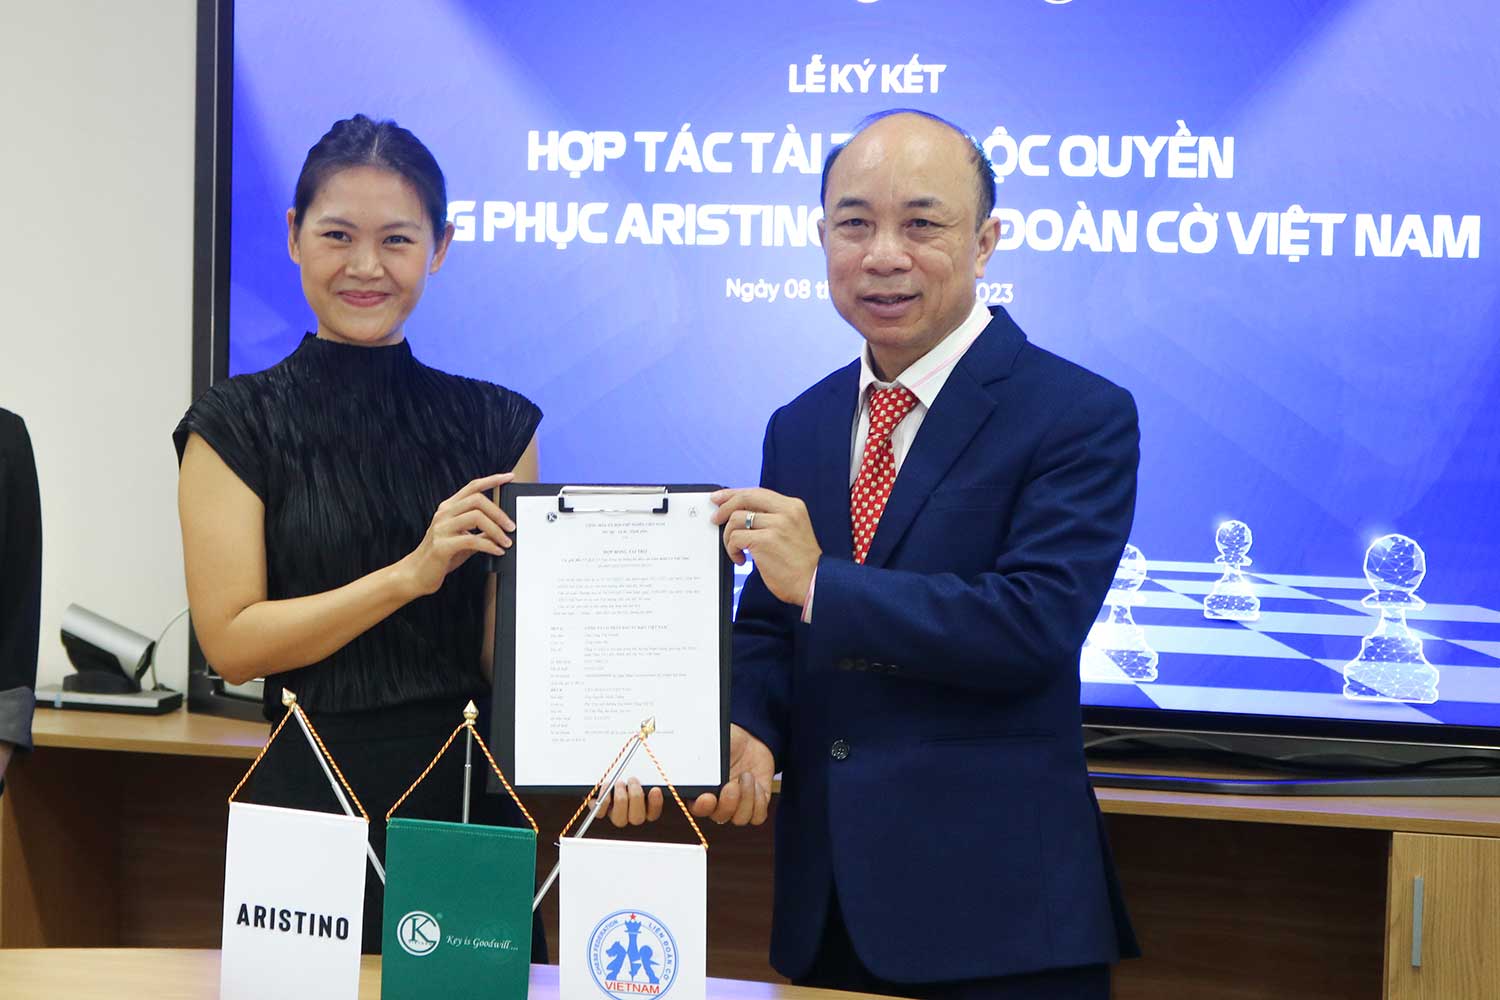 Lễ ký kết hợp tác tài trợ độc quyền Trang phục Aristino với Liên đoàn Cờ Việt Nam - Ảnh 3.